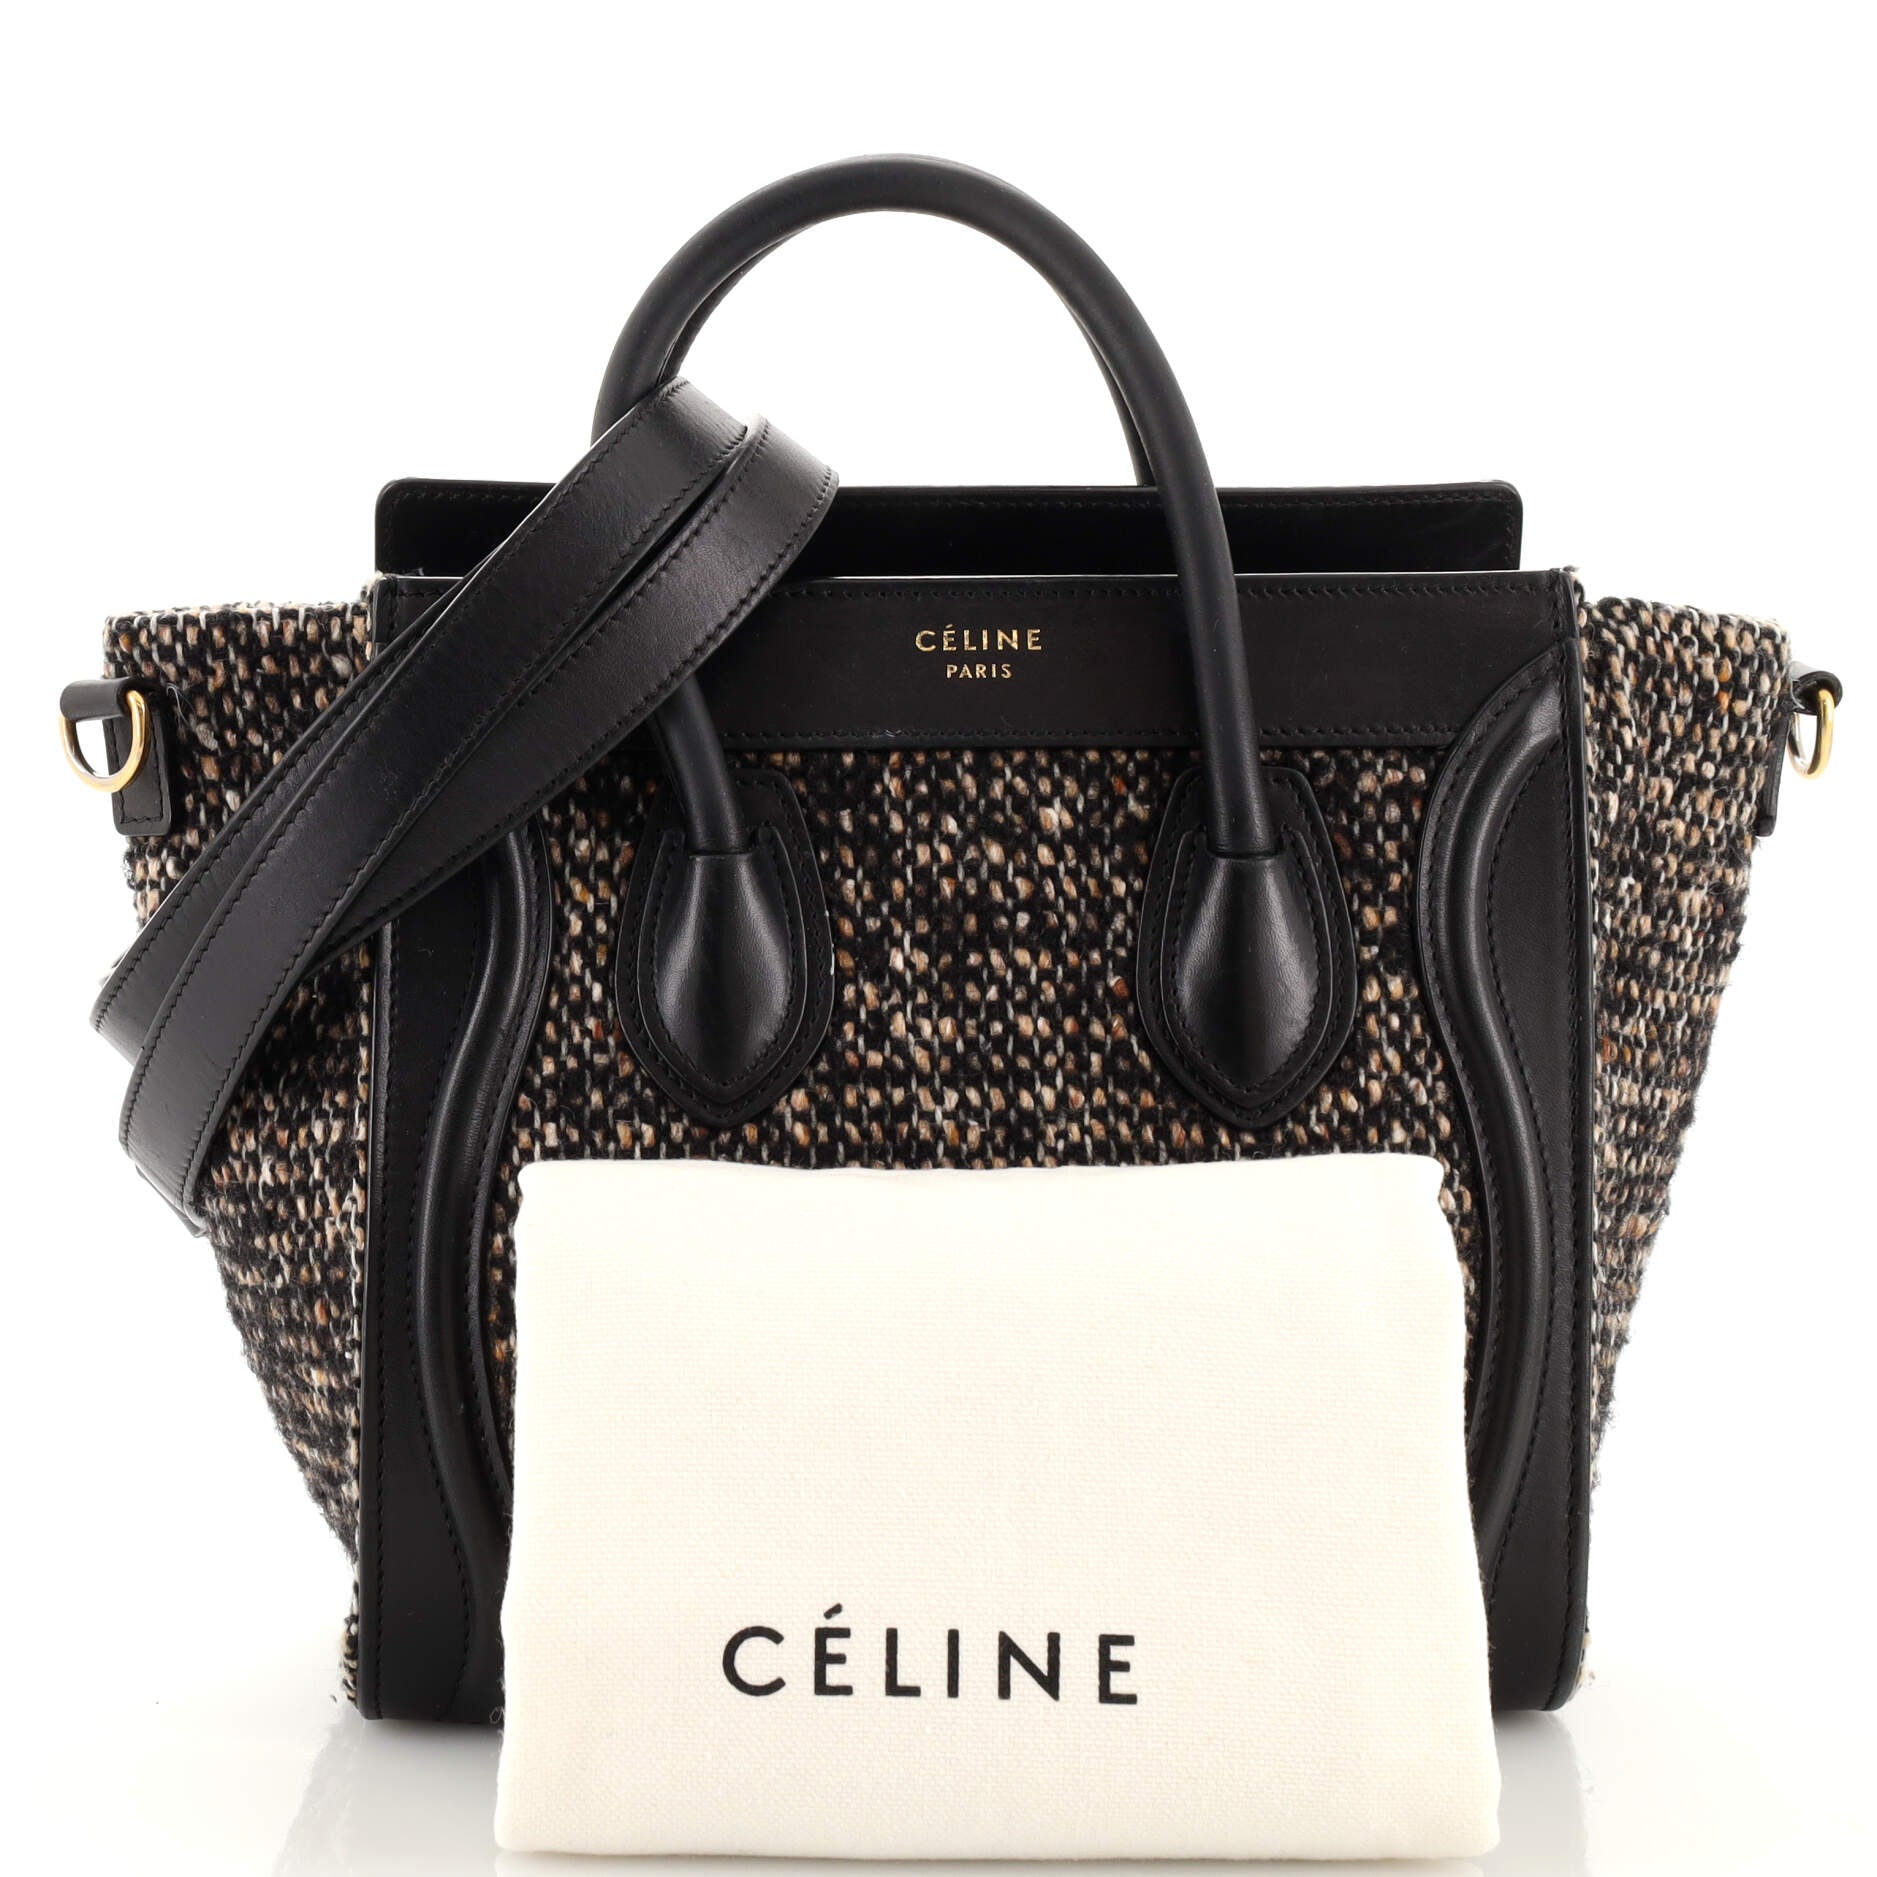 Celine - Small Boston Bag Brown for Women - 24S